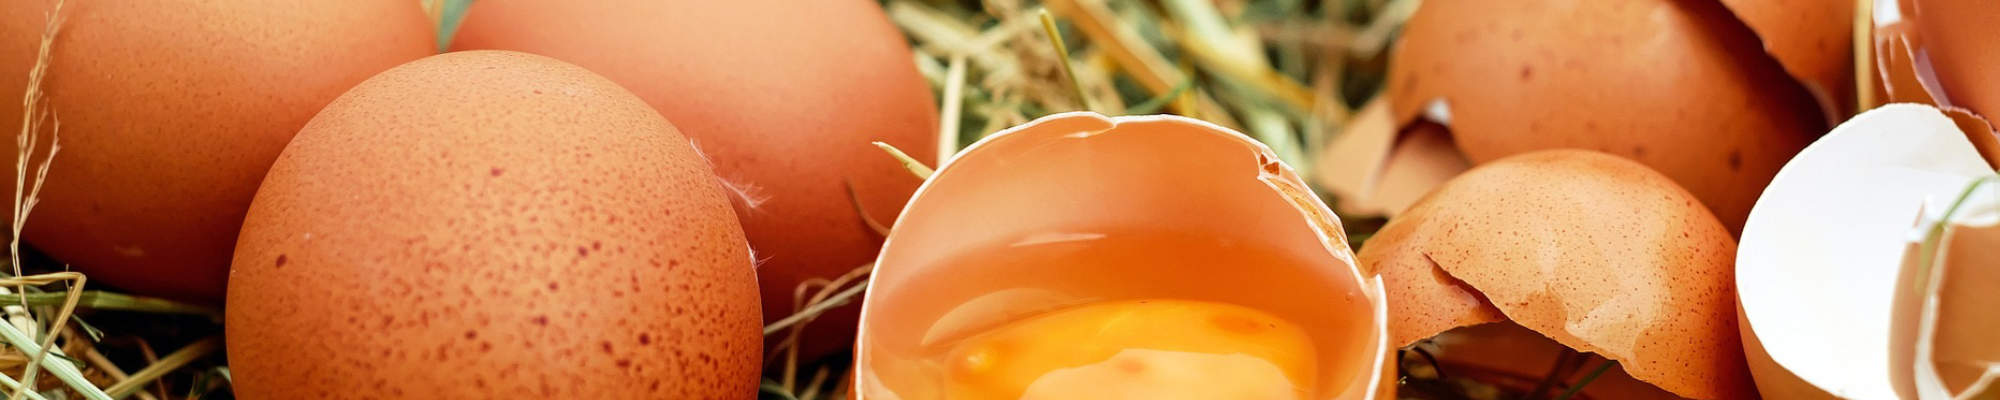 Haltungs- und Herkunftssicherung Ei